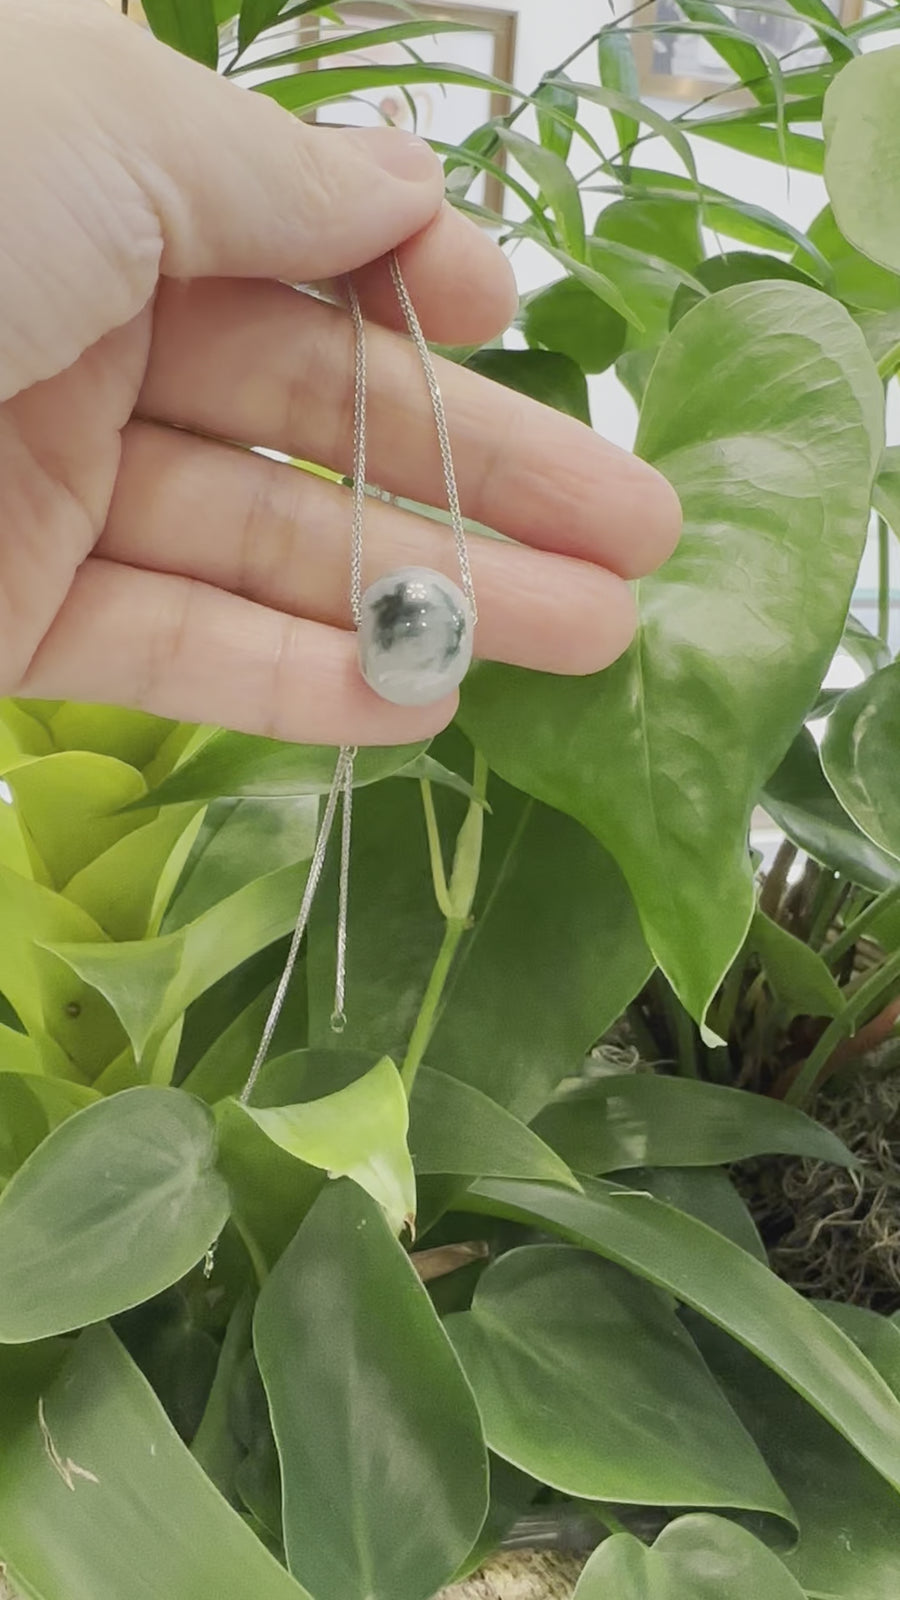 Baikalla™ "Good Luck Button" Necklace Real Ice Blue Green Jade Lucky KouKou Pendant Necklace